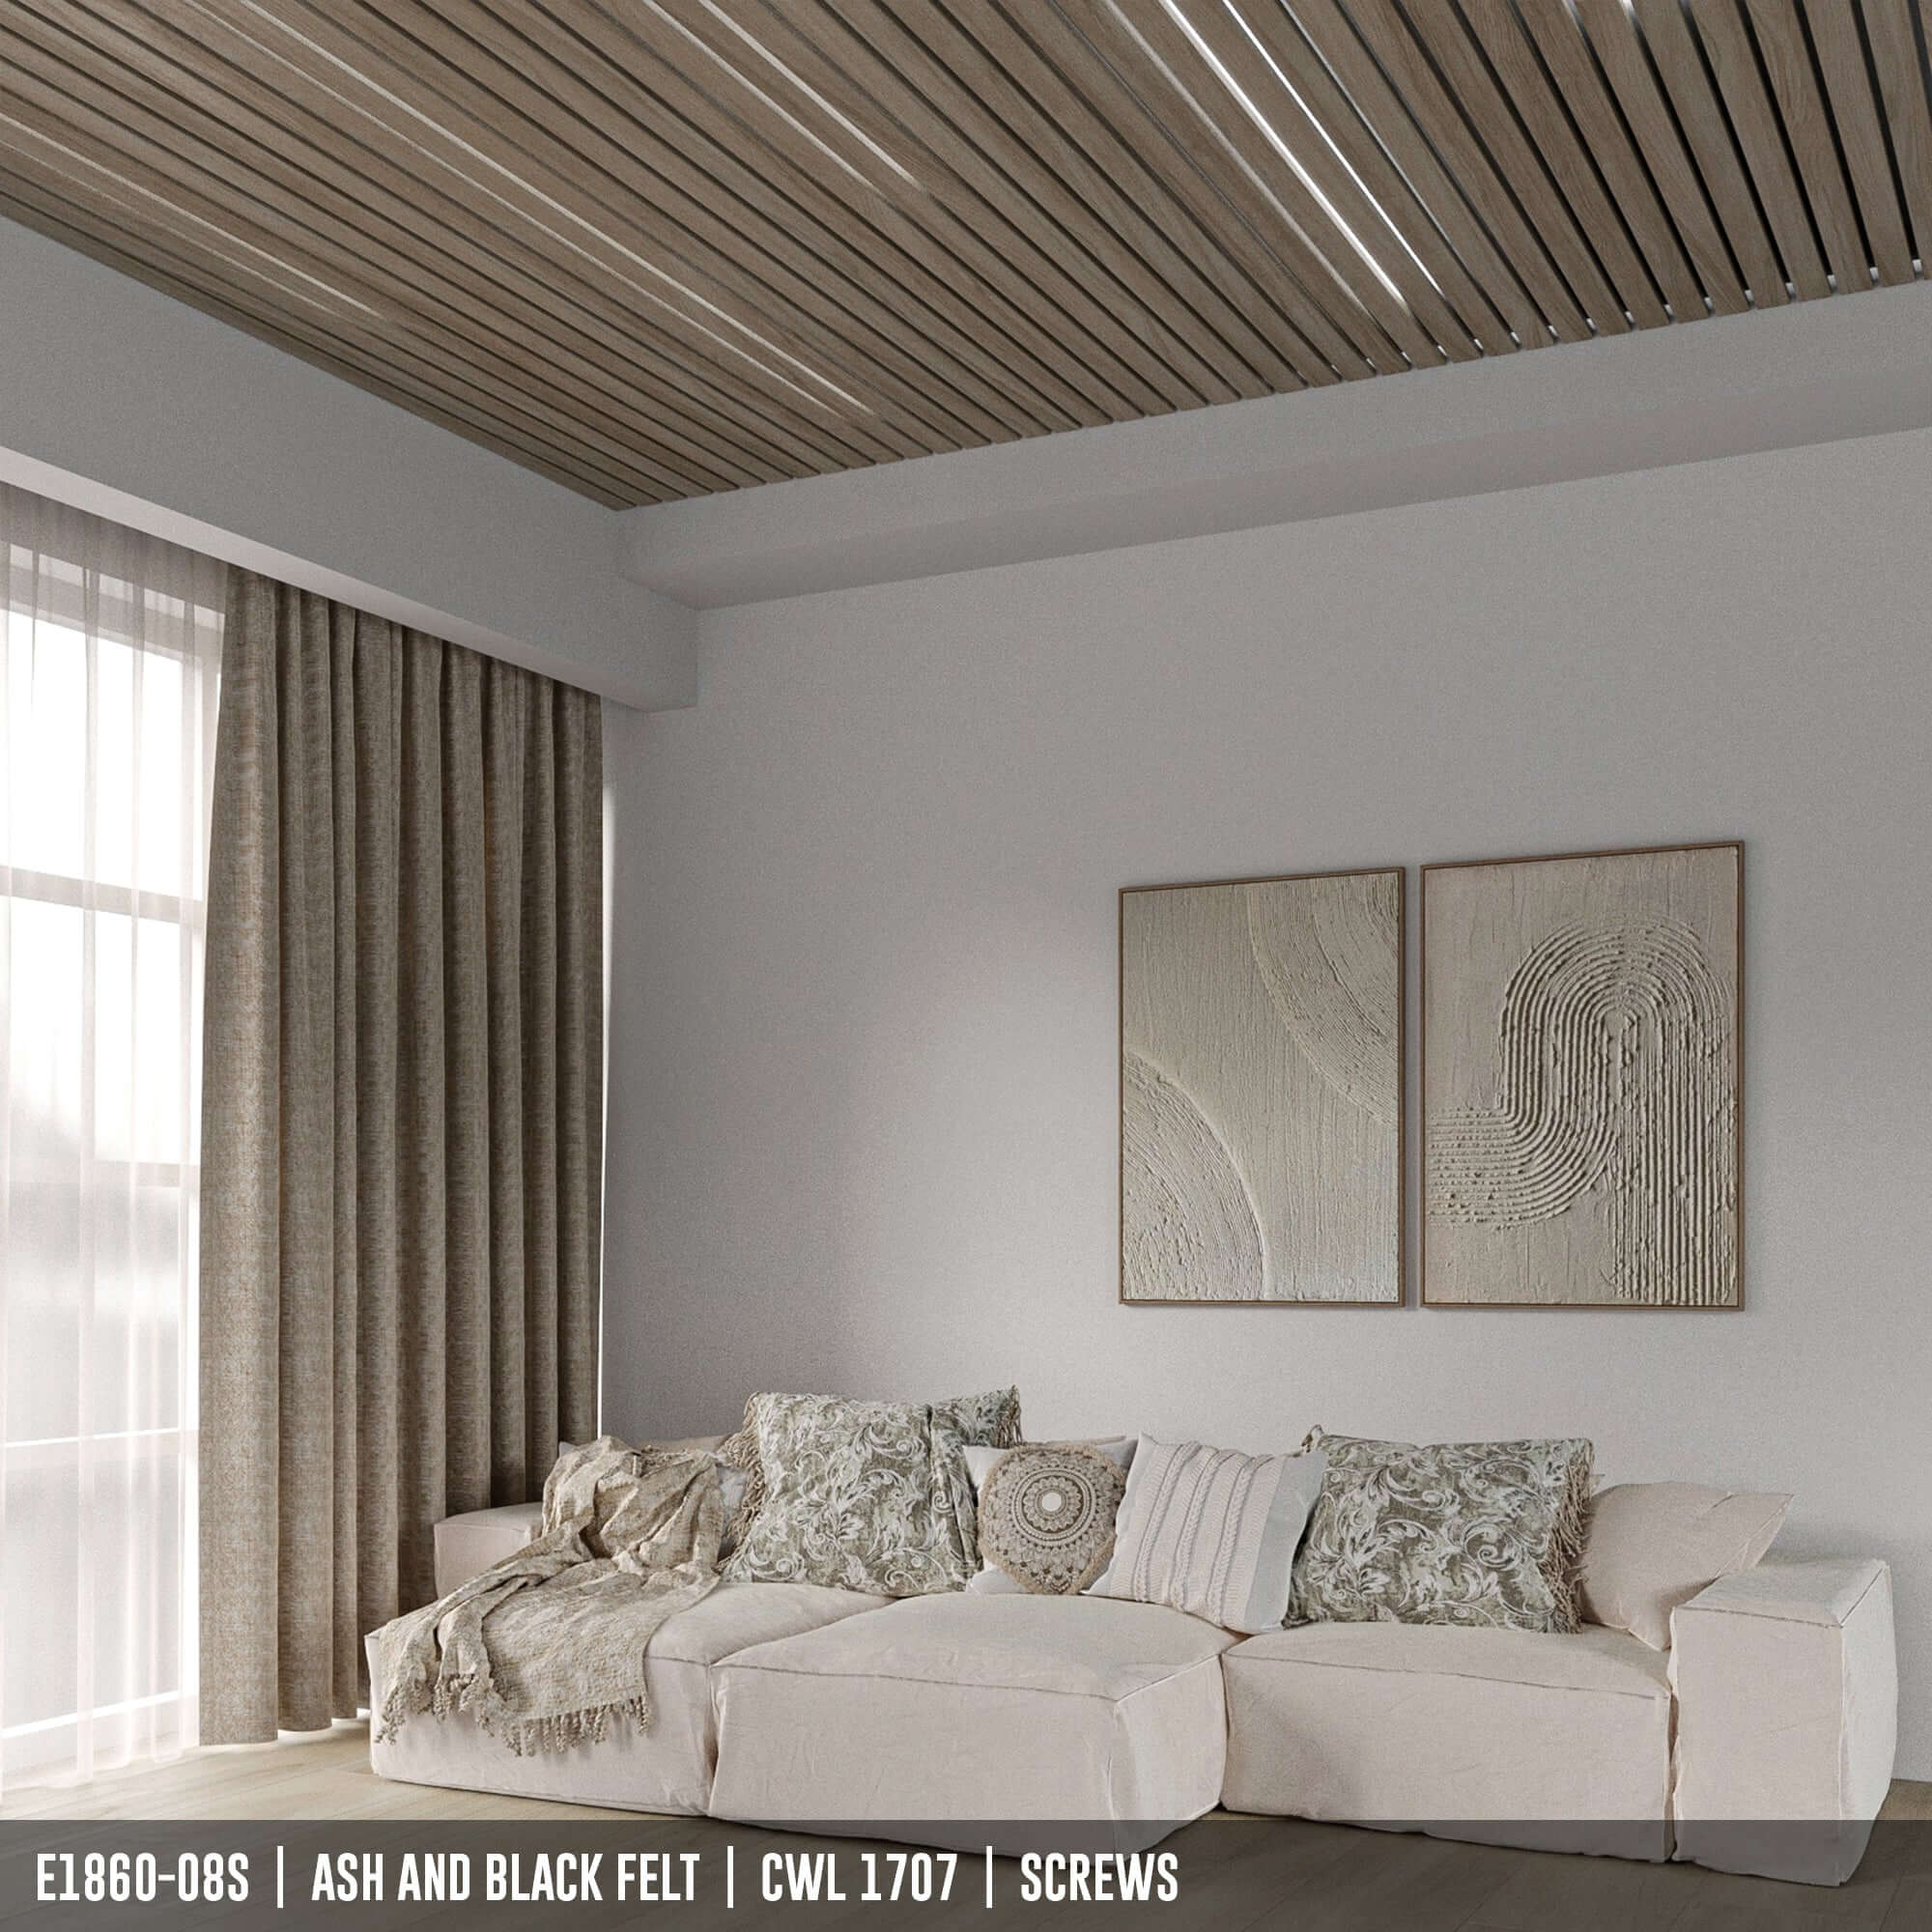 E1860-08S | Echolock Panel | Acoustical Wood Panel